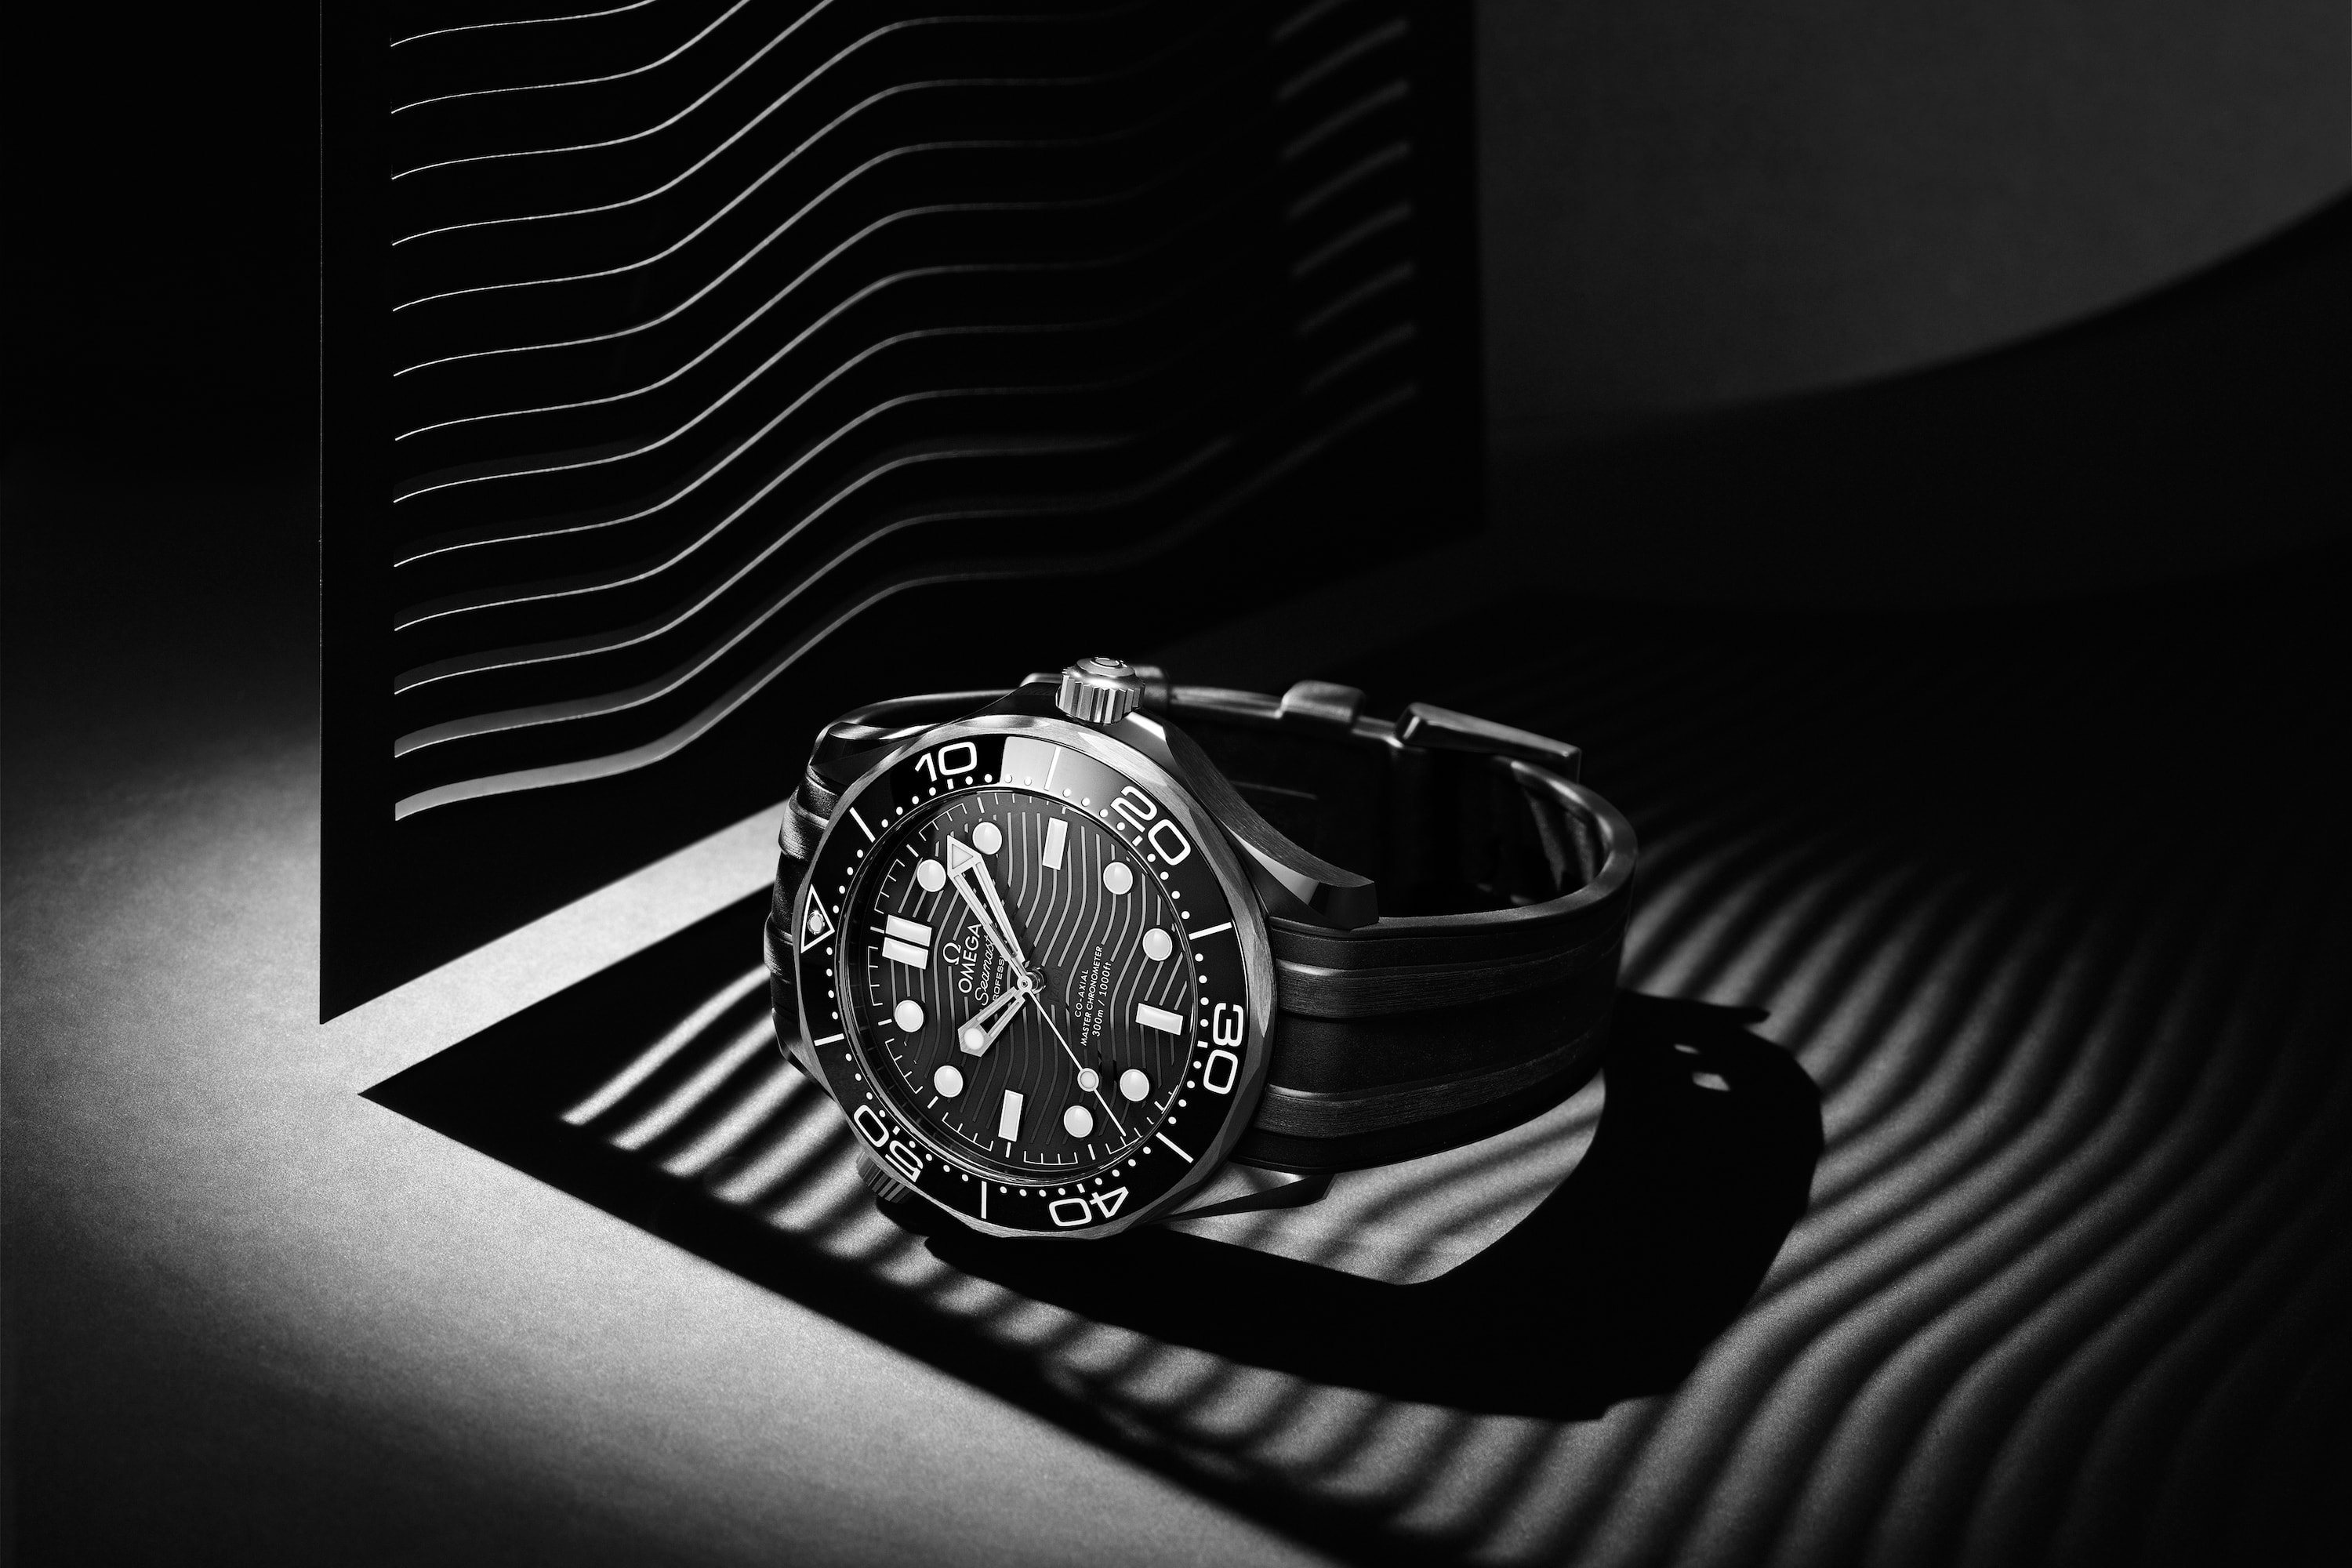 OMEGA 2019 全新腕錶系列一覽